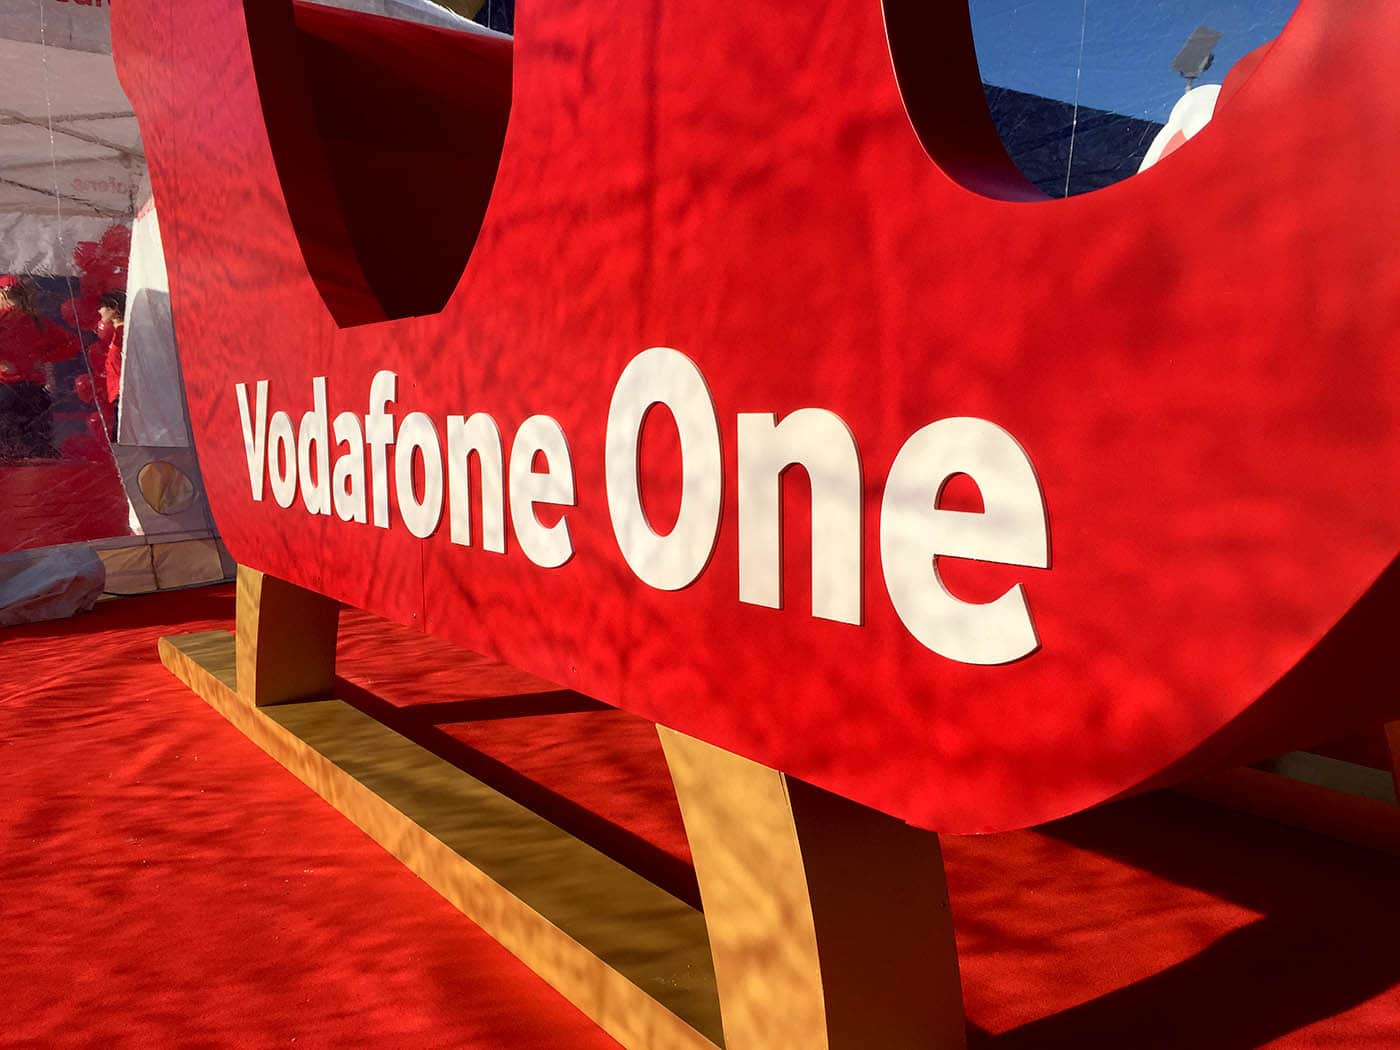 Decoración con muebles de madera para un evento de Navidad de Vodafone